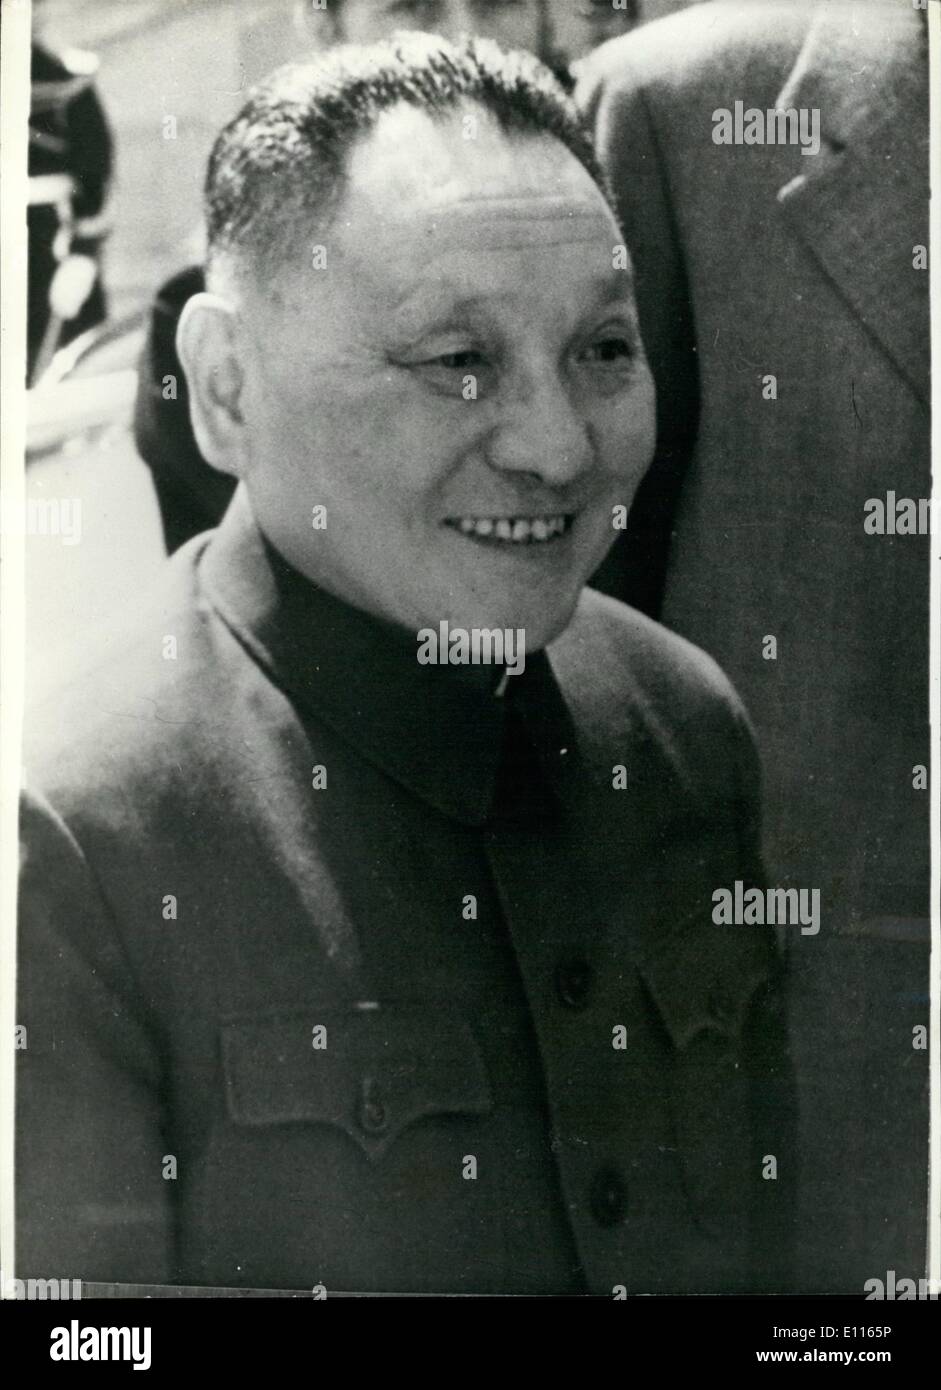 Gen 01, 1976 - Chou En-Lai muore di cancro a 77: Chou En-Lai,premier della Repubblica popolare cinese dal 1949 sono morte ieri a Pechino di cancro all'età di 77. La foto mostra Teng-Hsiao-Ping Cina il primo Vice Premier e il probabile successore di Primo Ministro dopo la morte di Chou En-Lai a Pechino ieri. Foto Stock